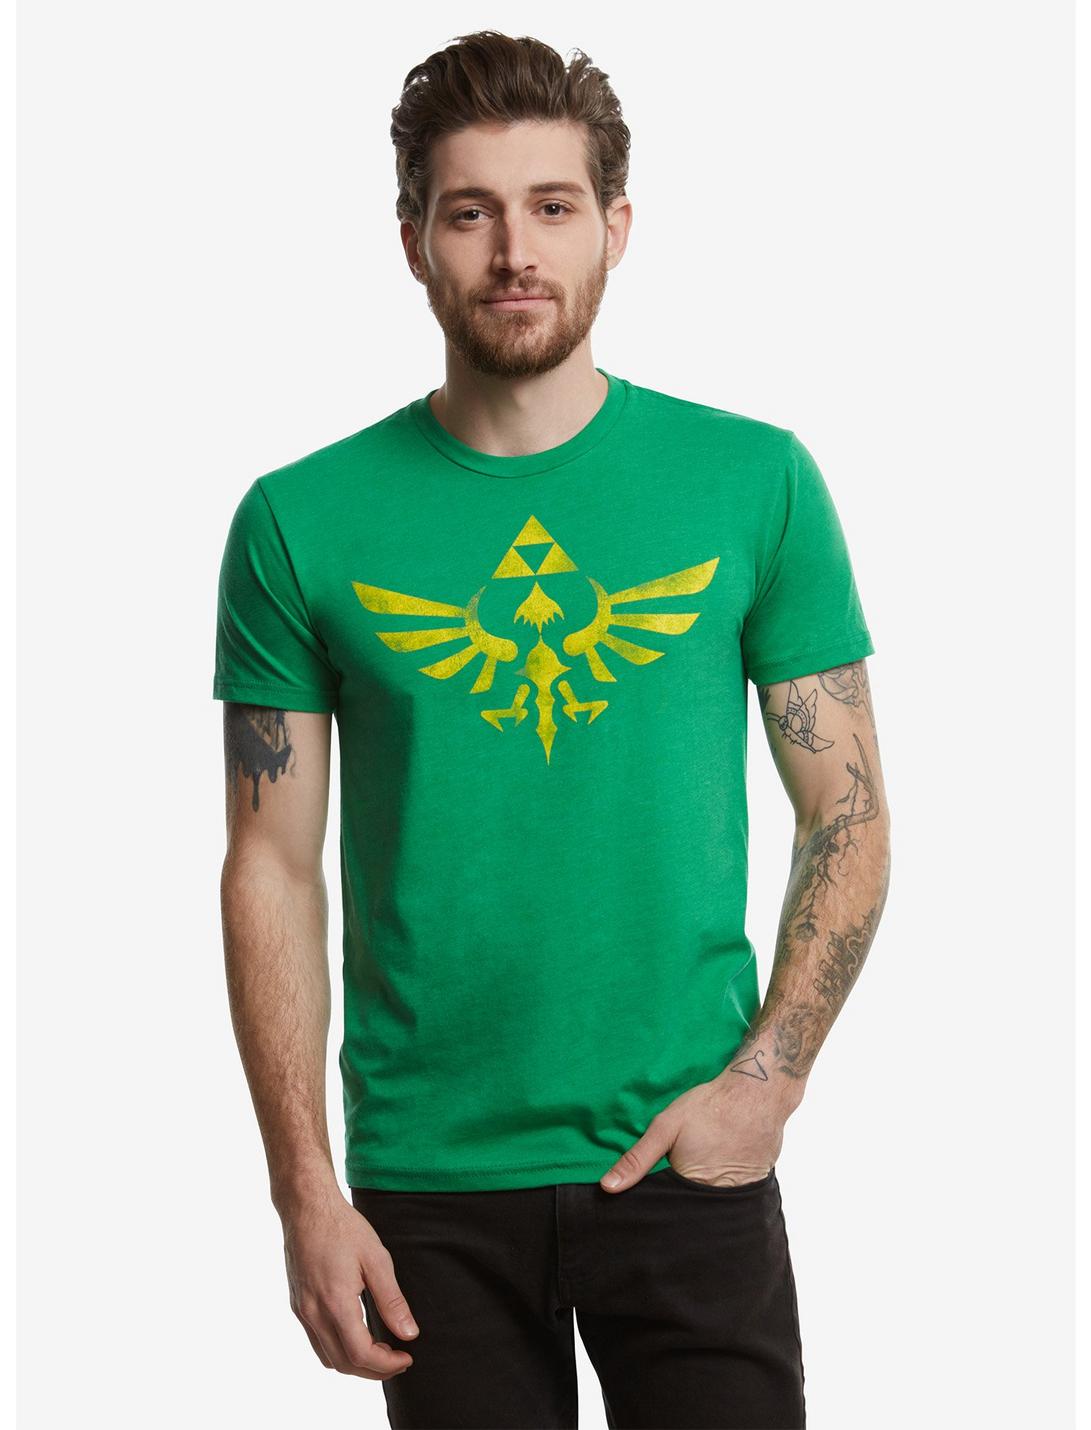 Nintendo The Legend Of Zelda Green Triforce T-Shirt, GREEN, hi-res